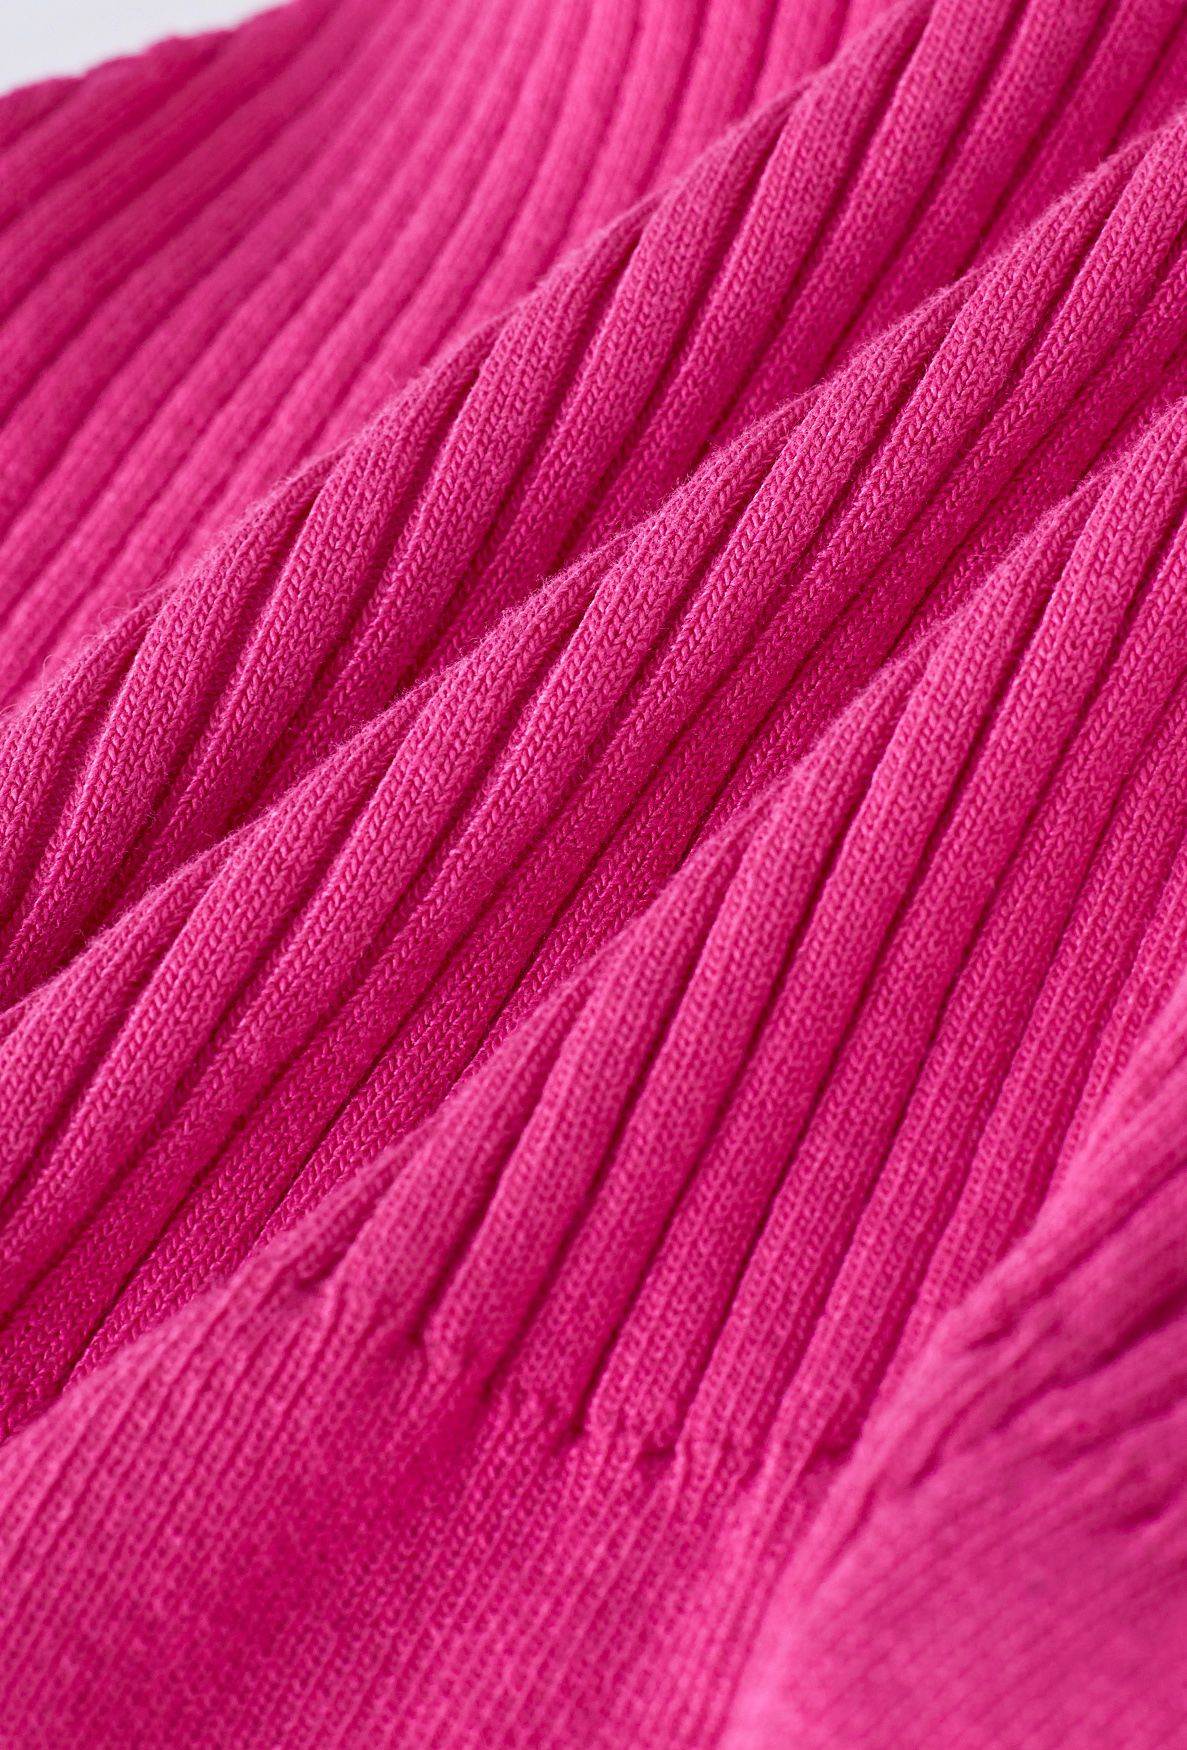 Knoten-Neckholder-Strick-Crop-Top in Hot Pink